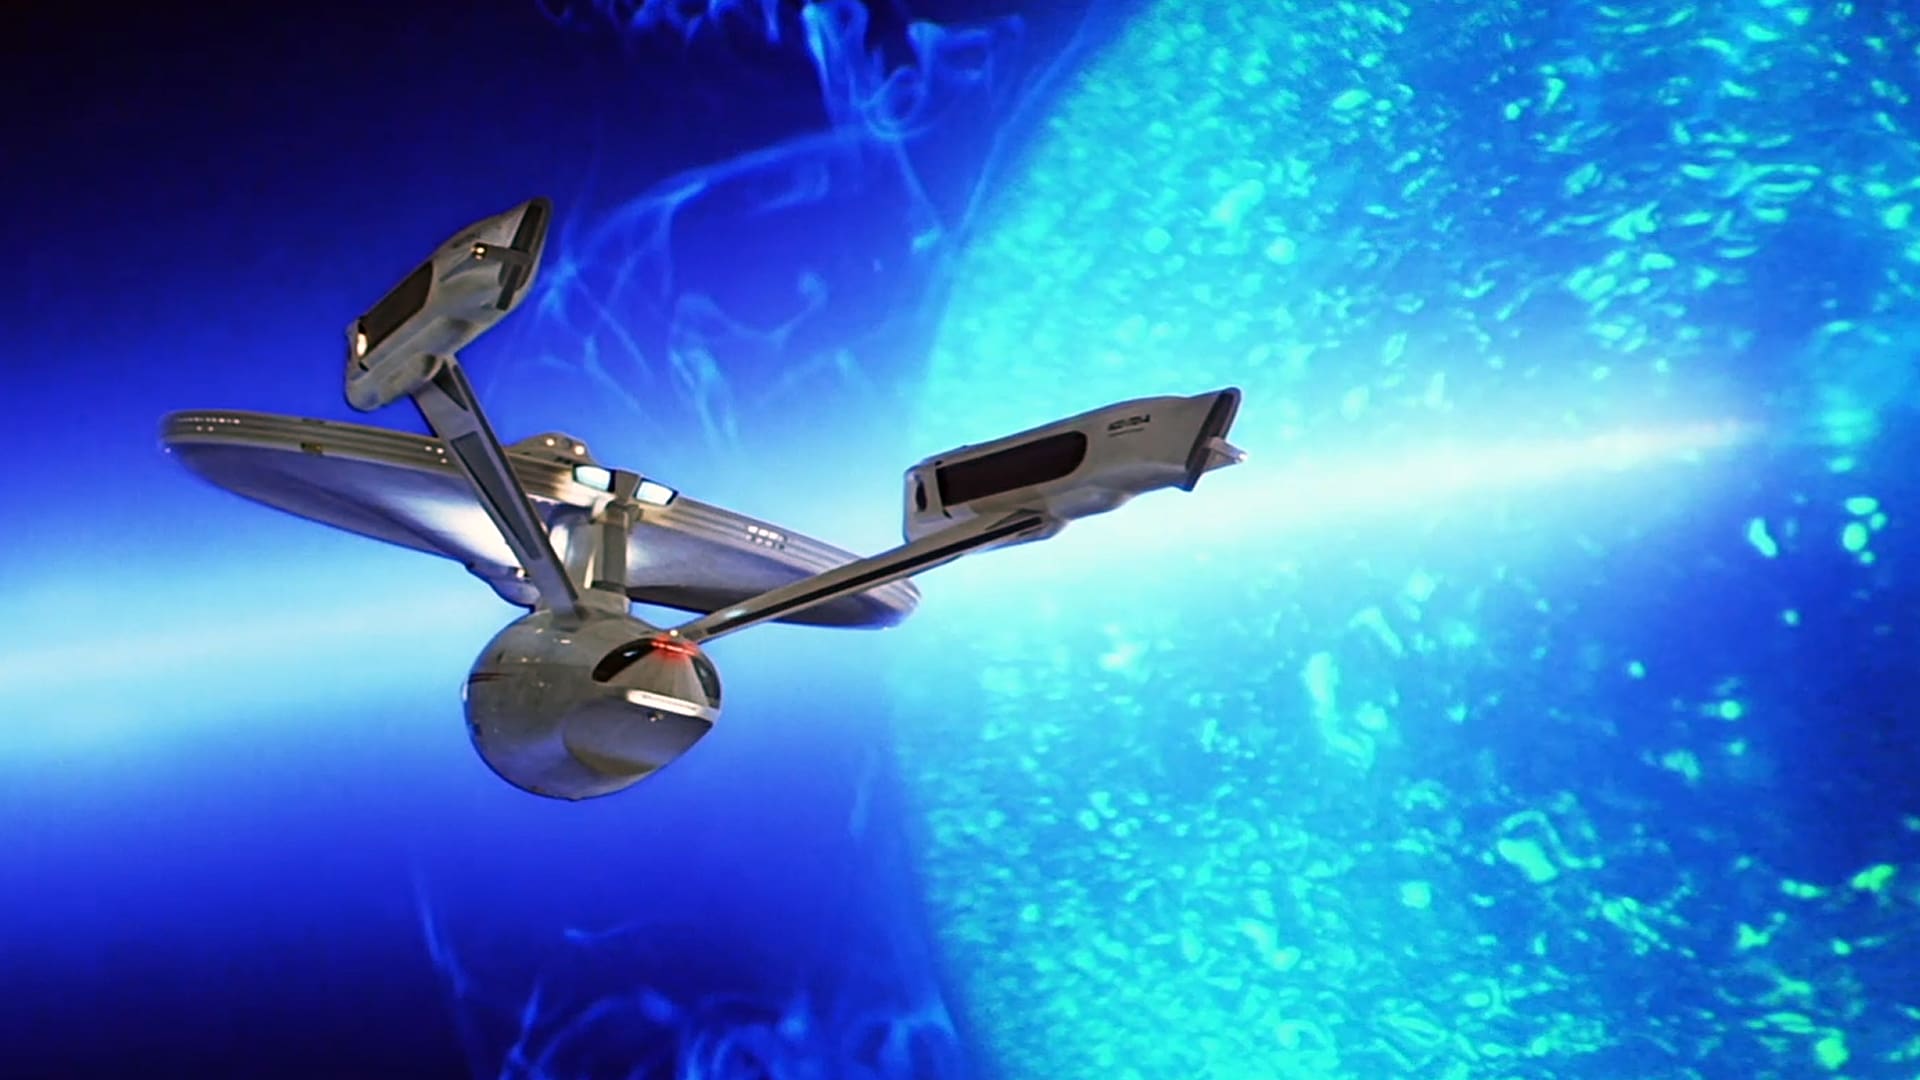 Star Trek V: The Final Frontier Screenshot